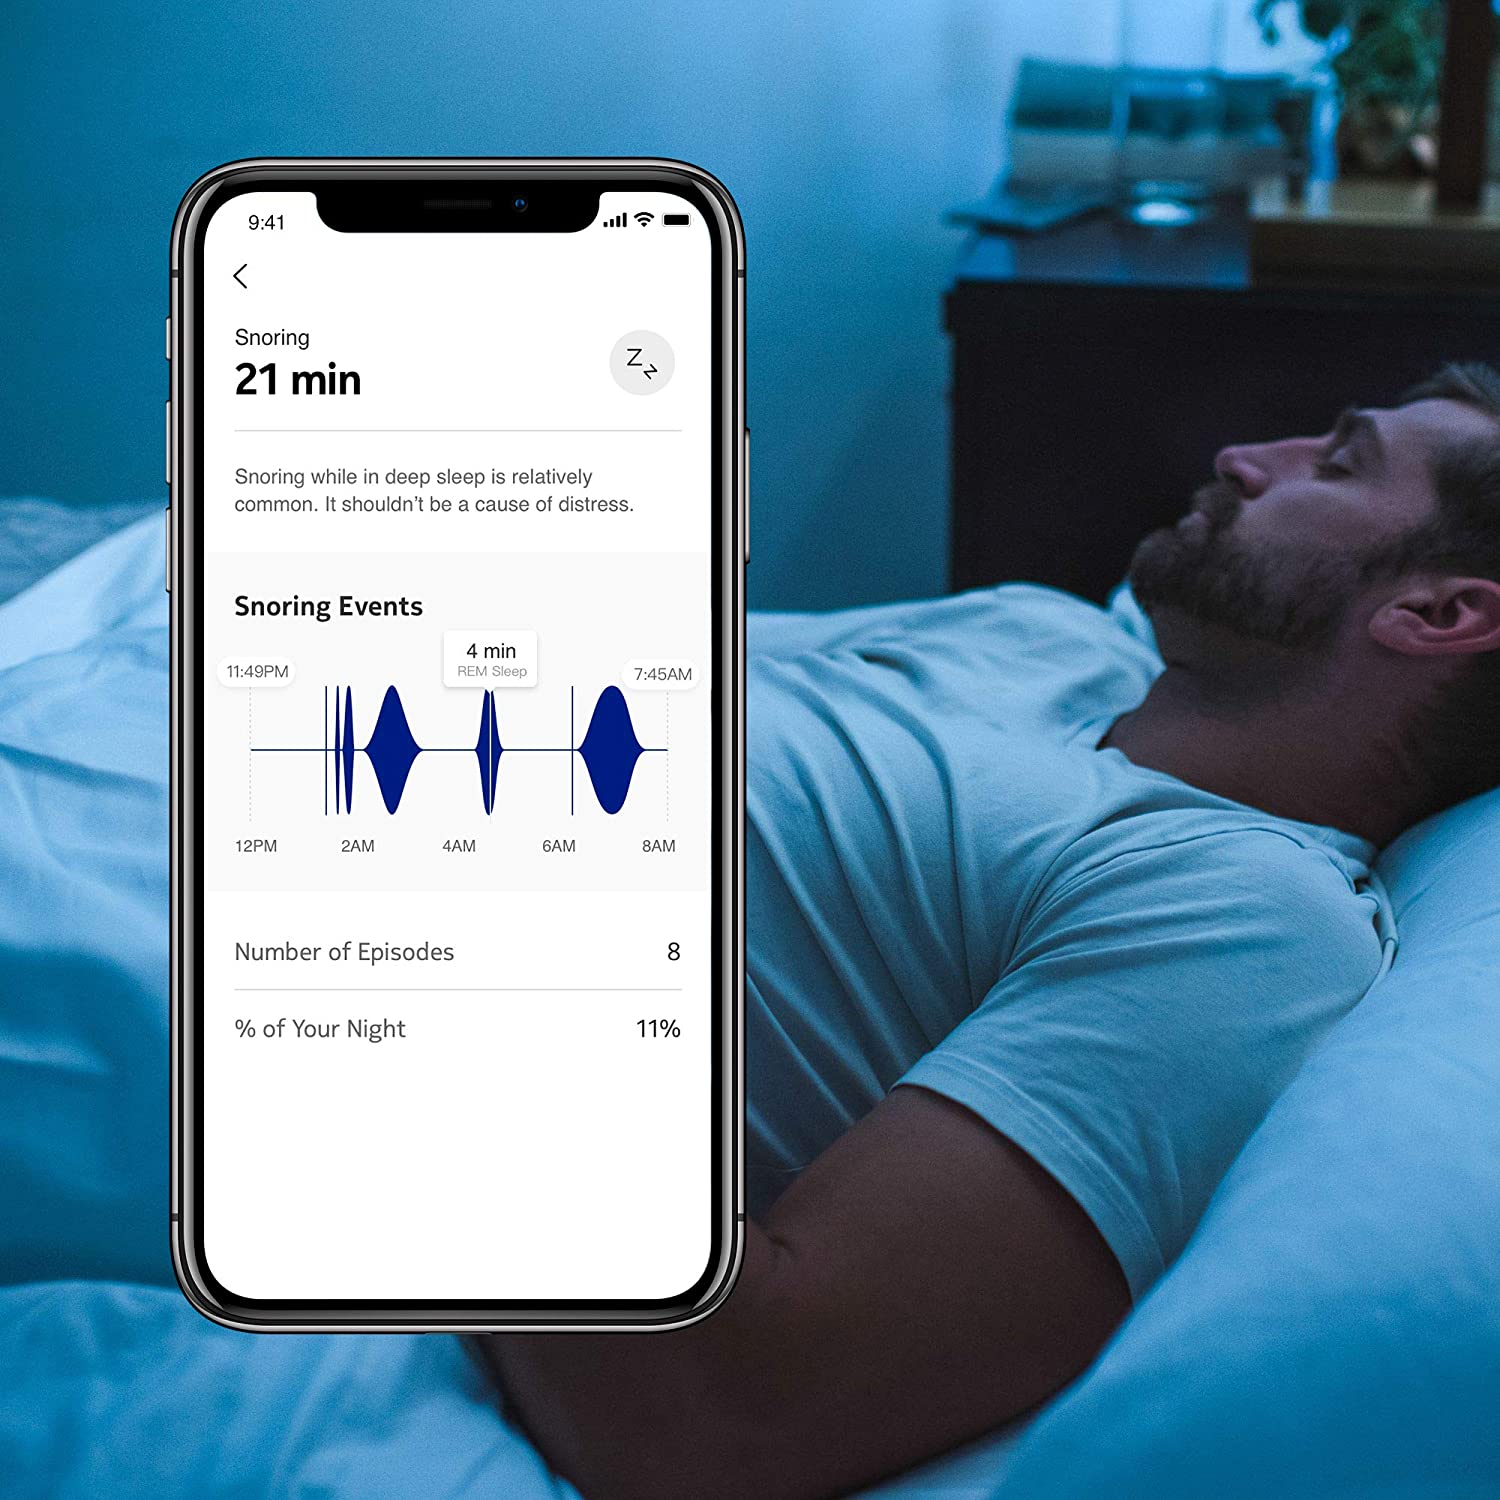 Nokia Sleep Smart Sensor and Home Automation Pad with Sleep Cycle Analysis